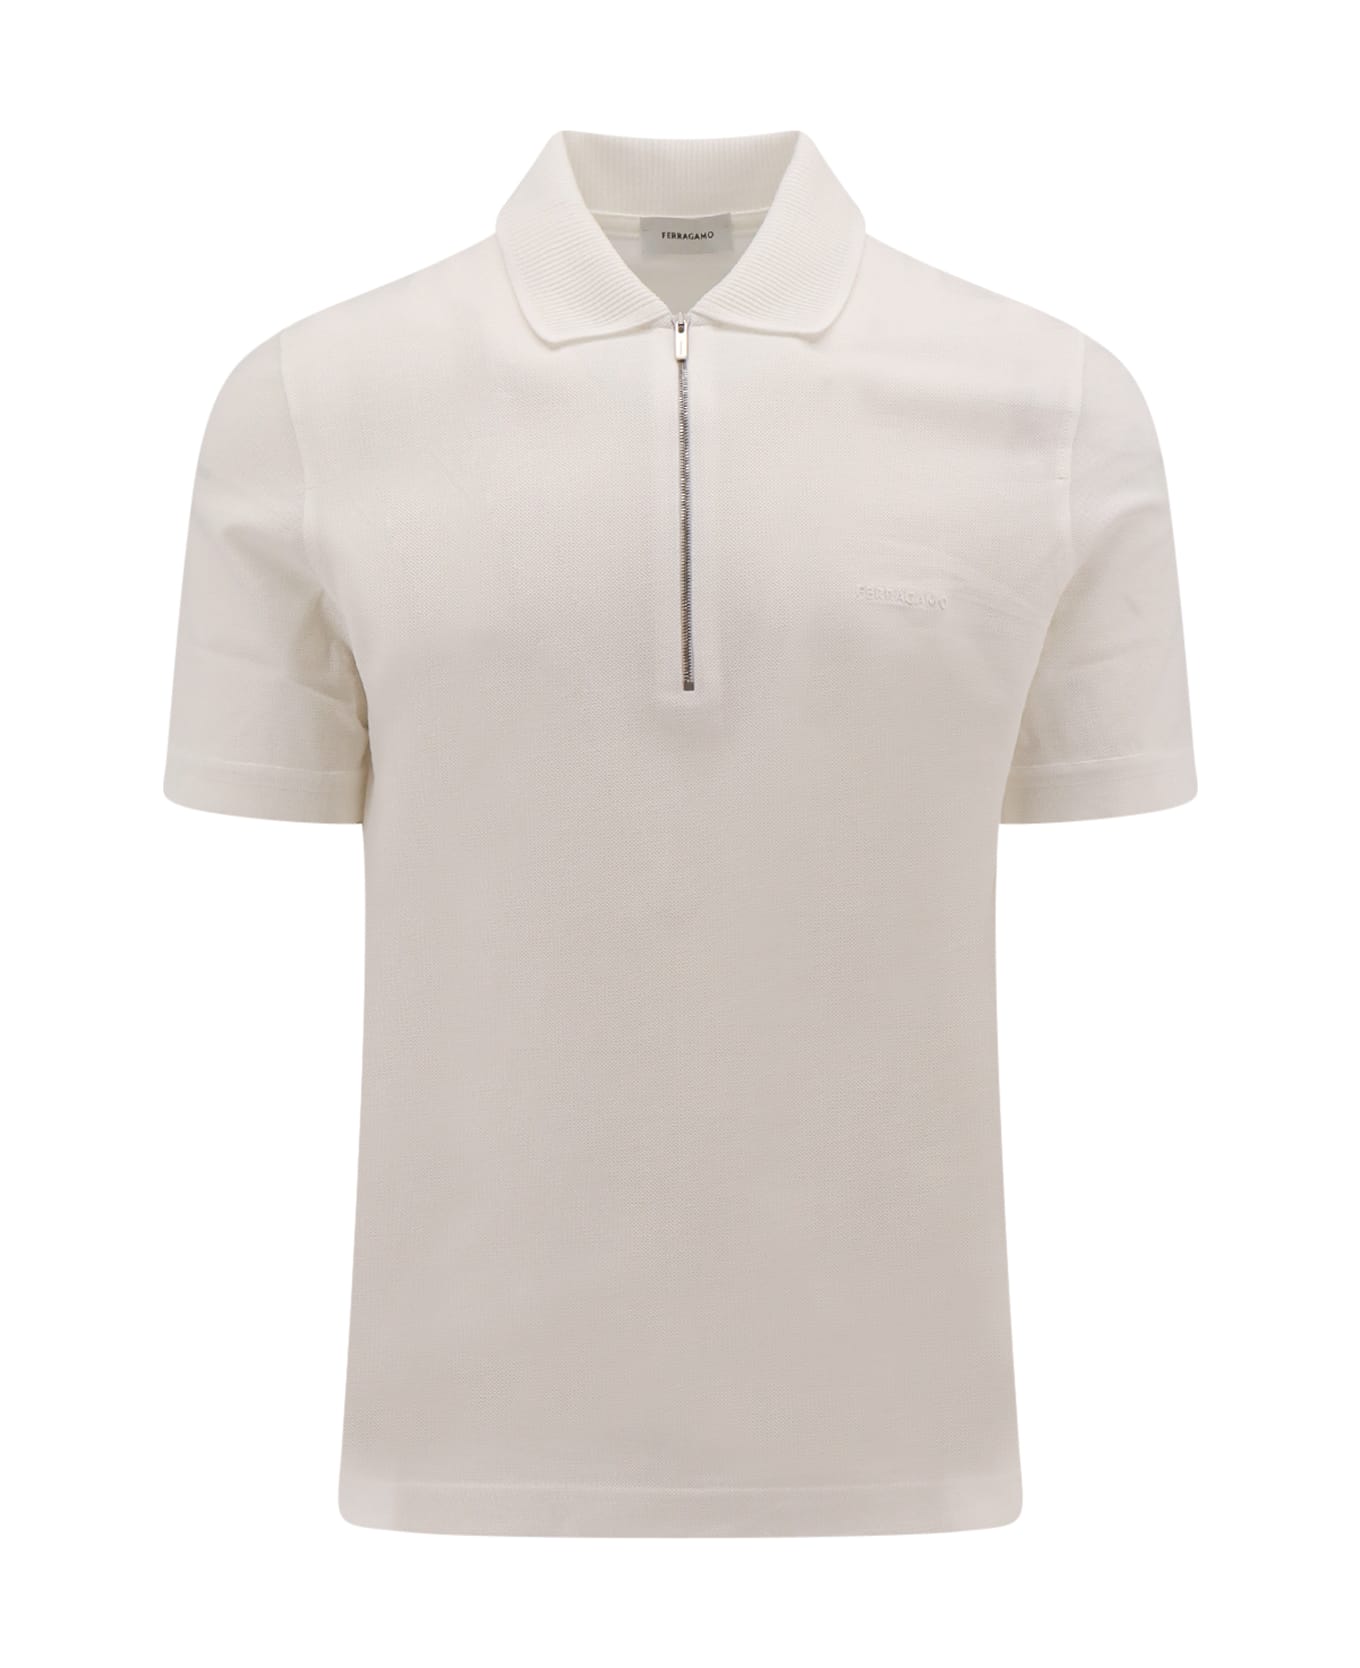 Ferragamo Polo Shirt - White ポロシャツ